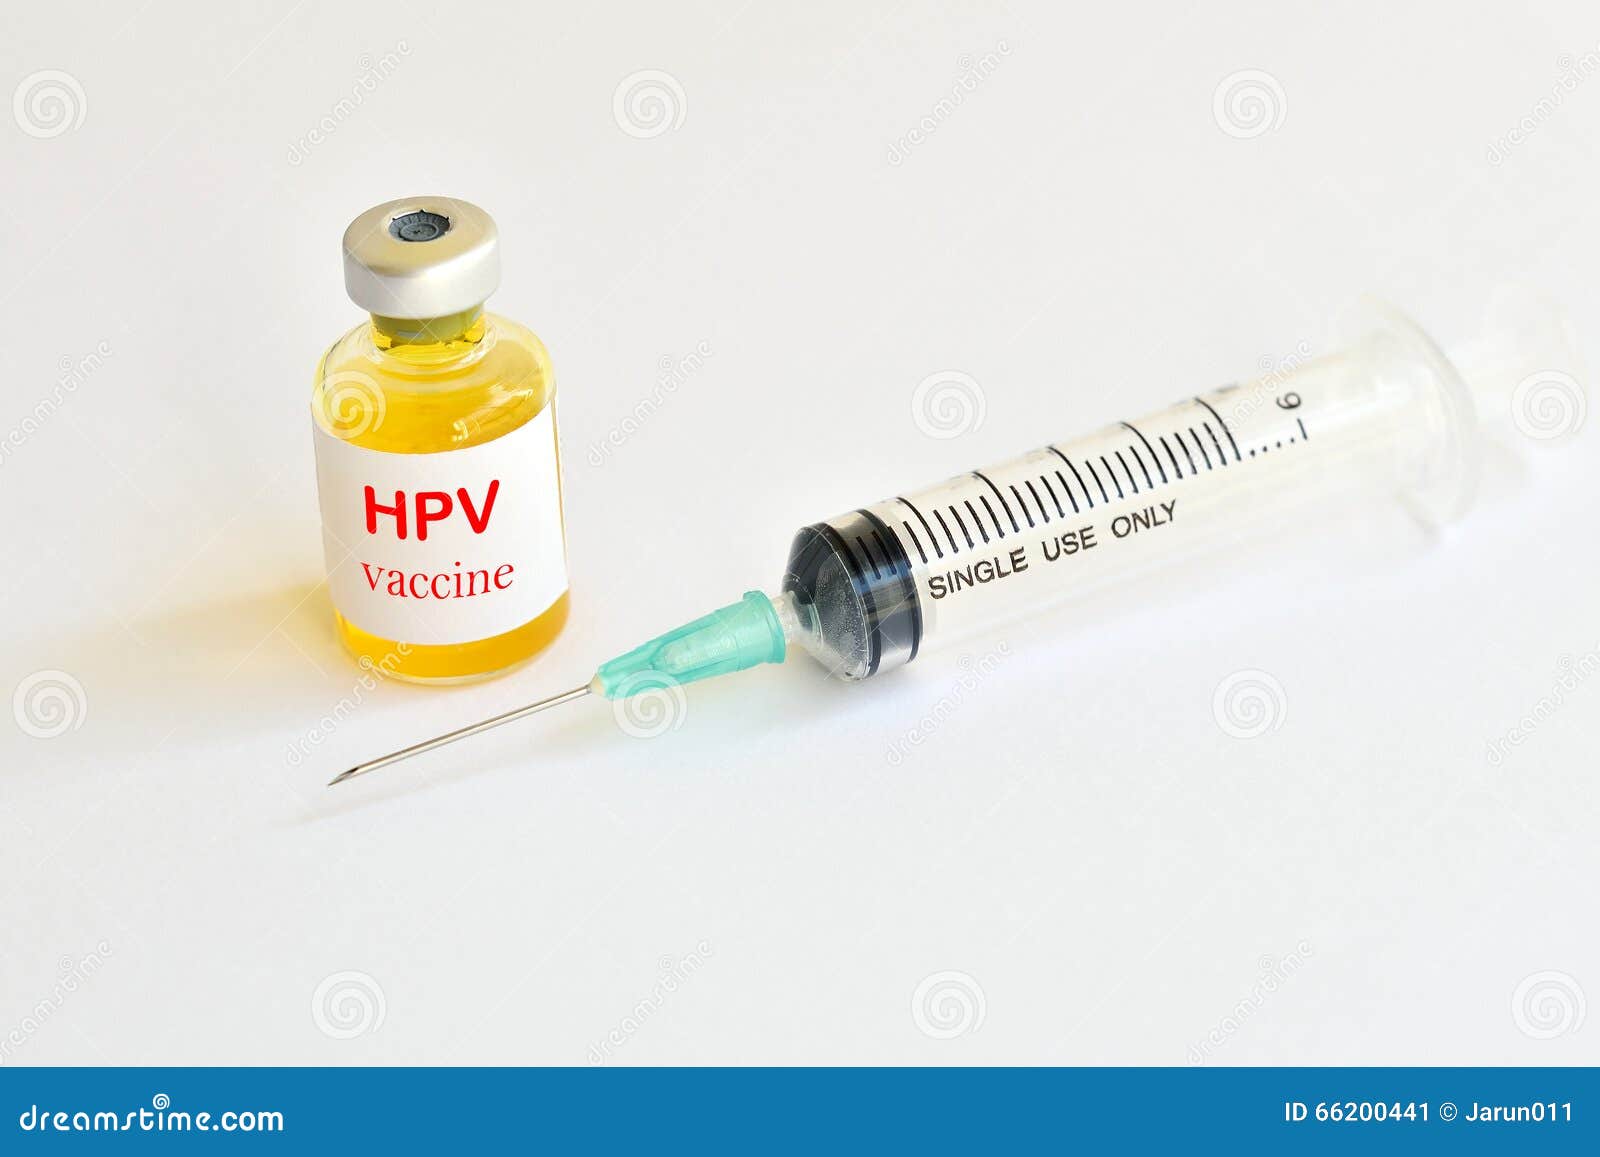 human papillomavirus hpv immunisation